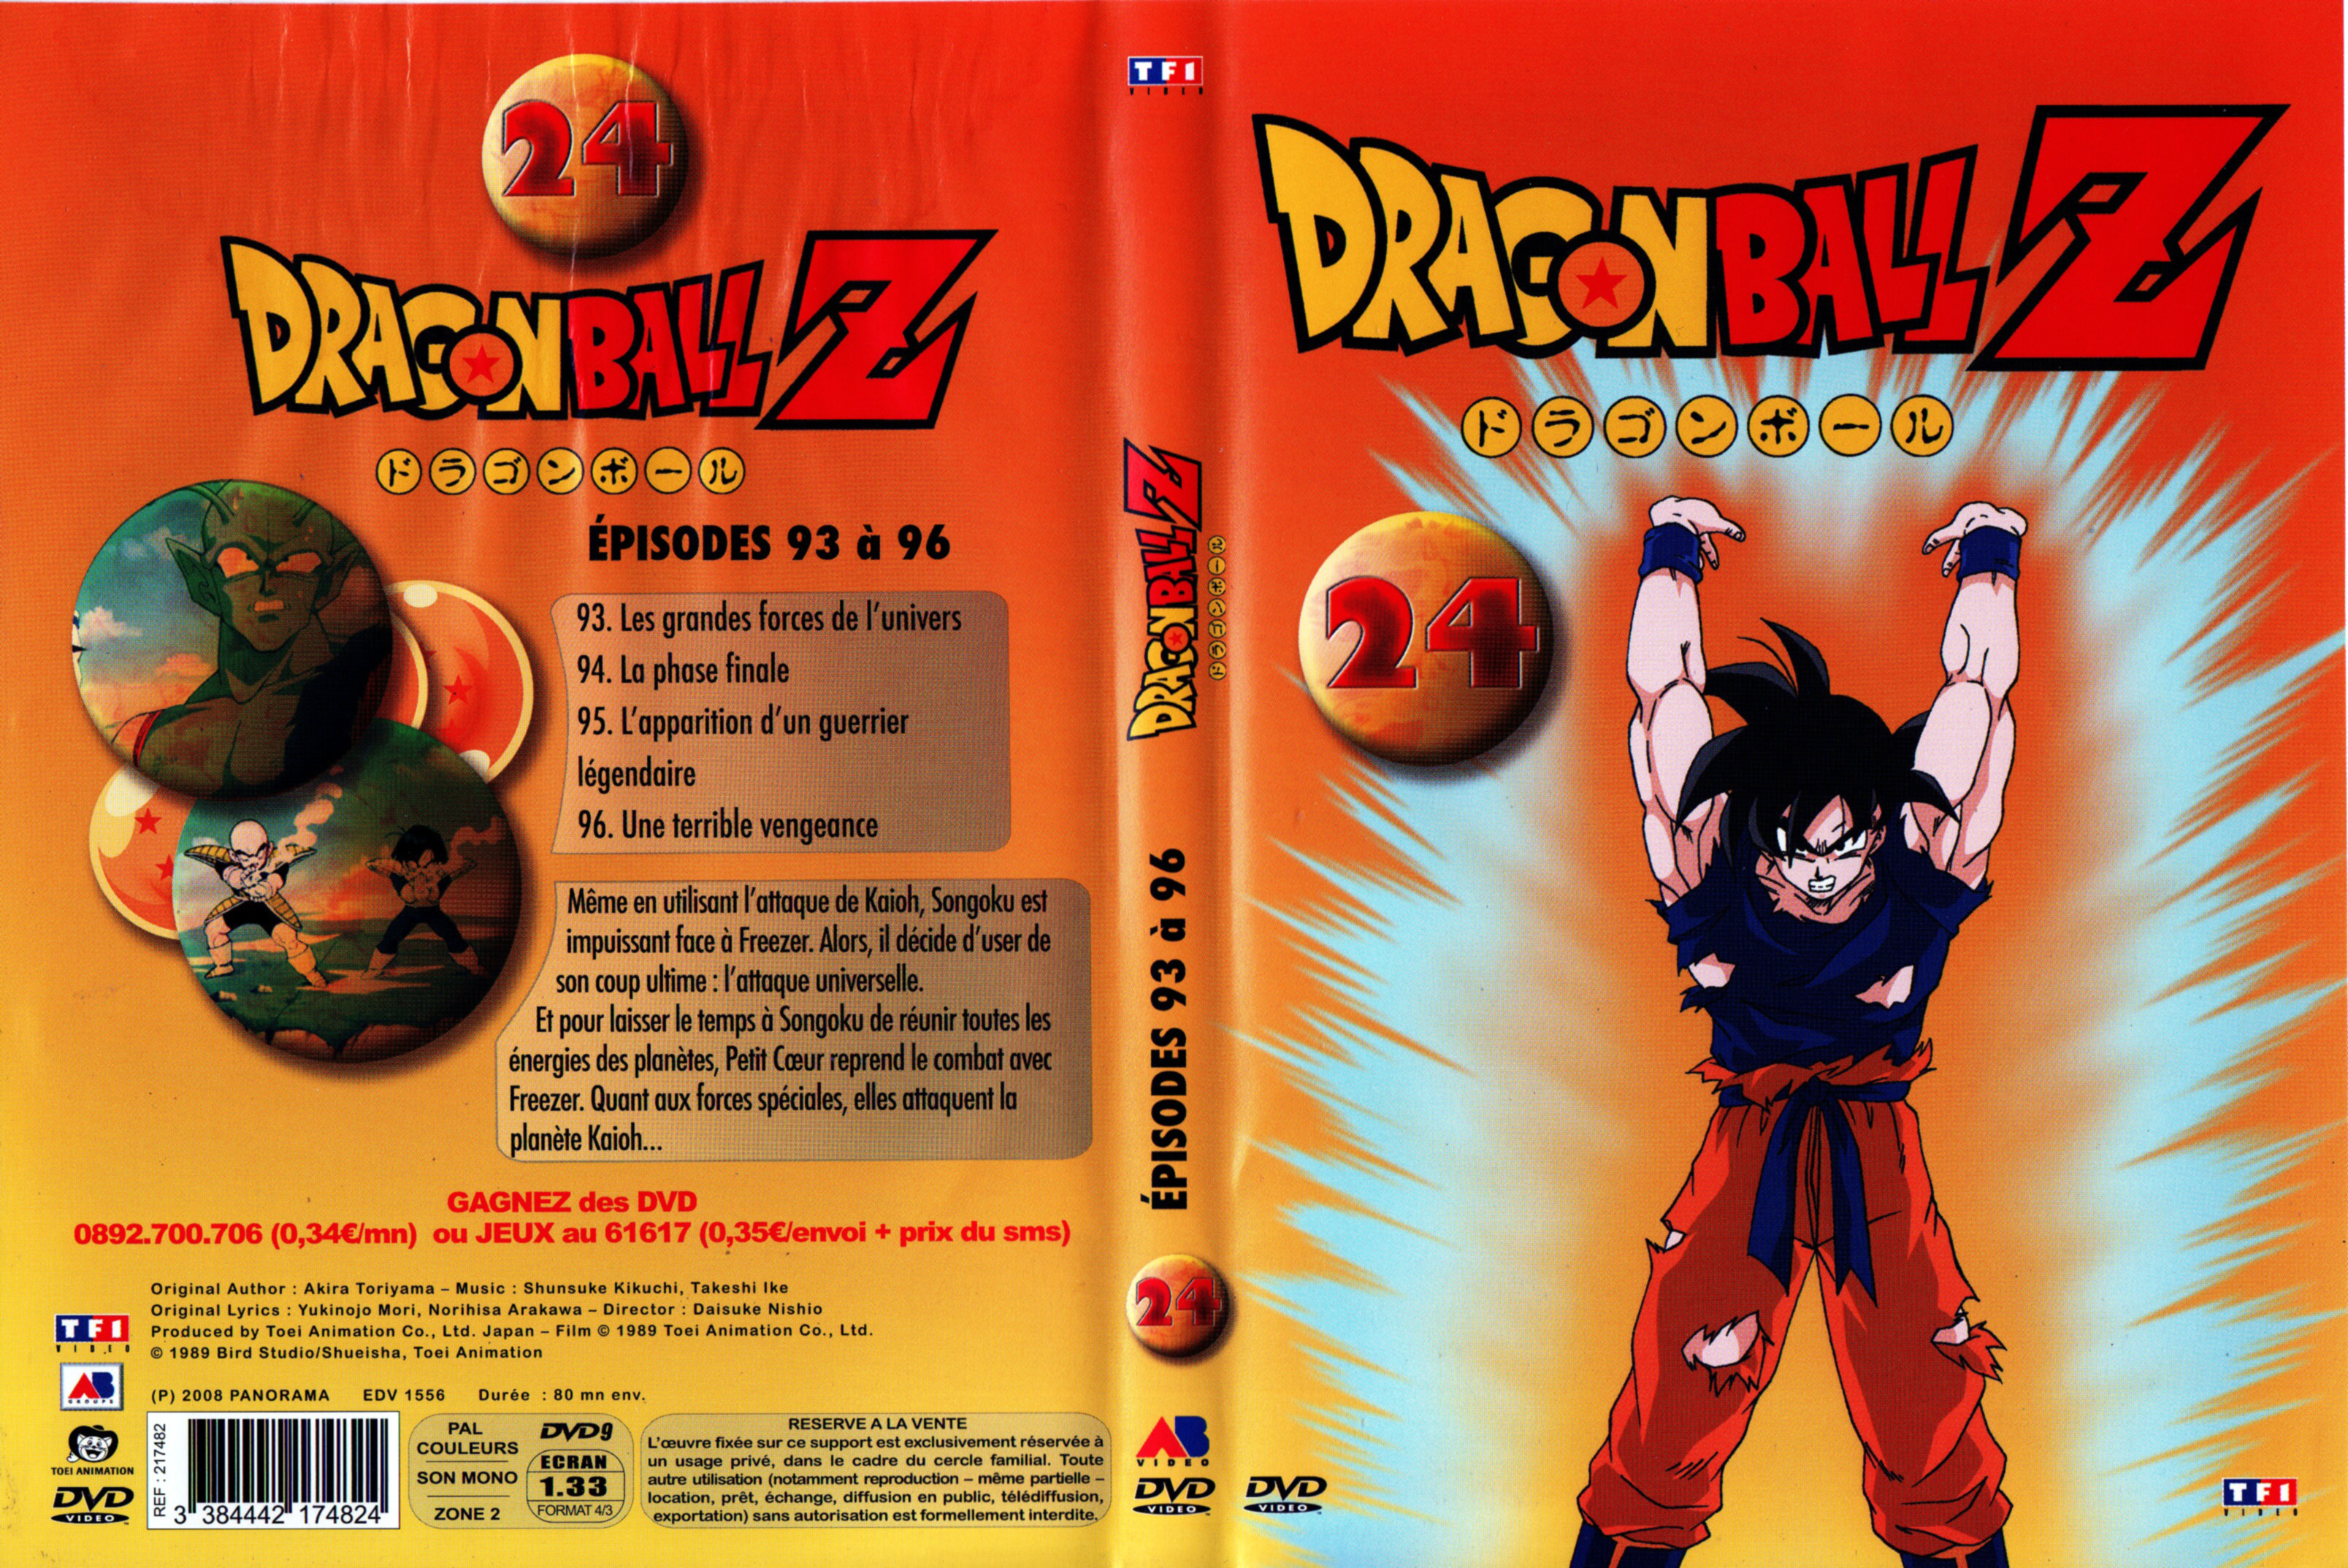 Jaquette DVD Dragon Ball Z vol 24 v2